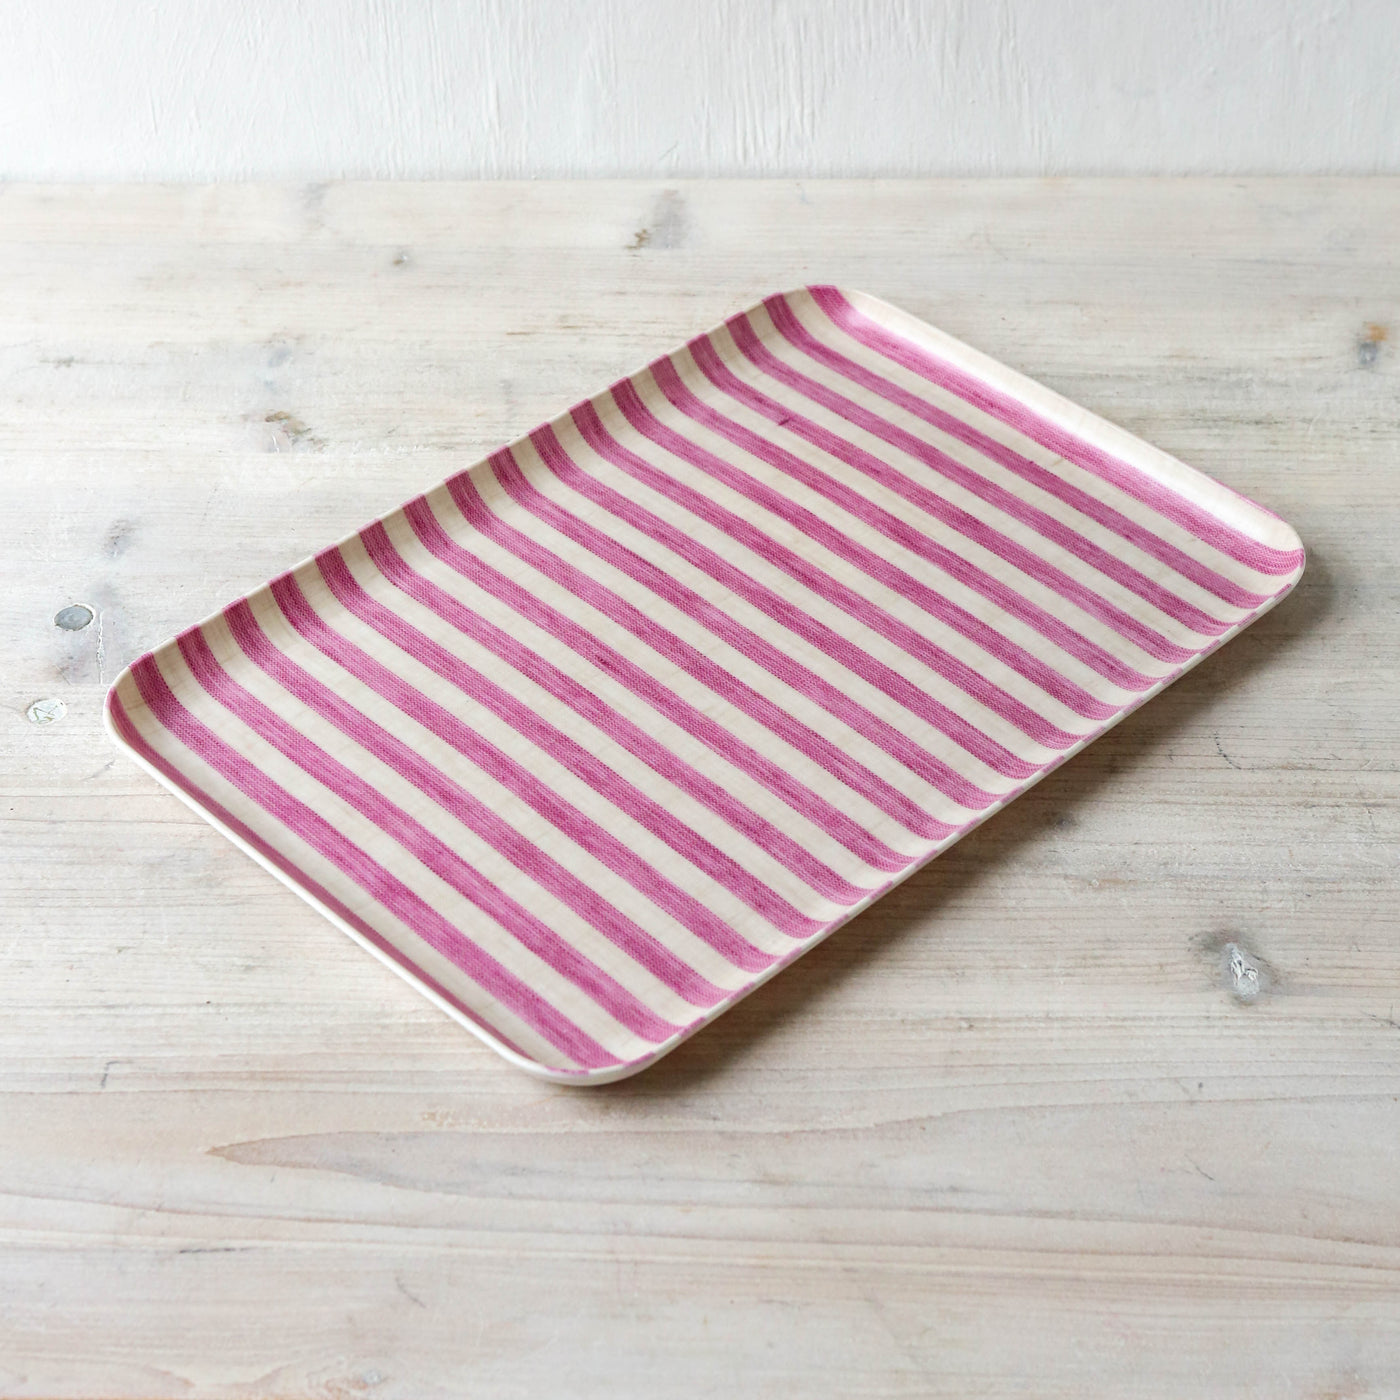 Coated Linen Tray - Medium